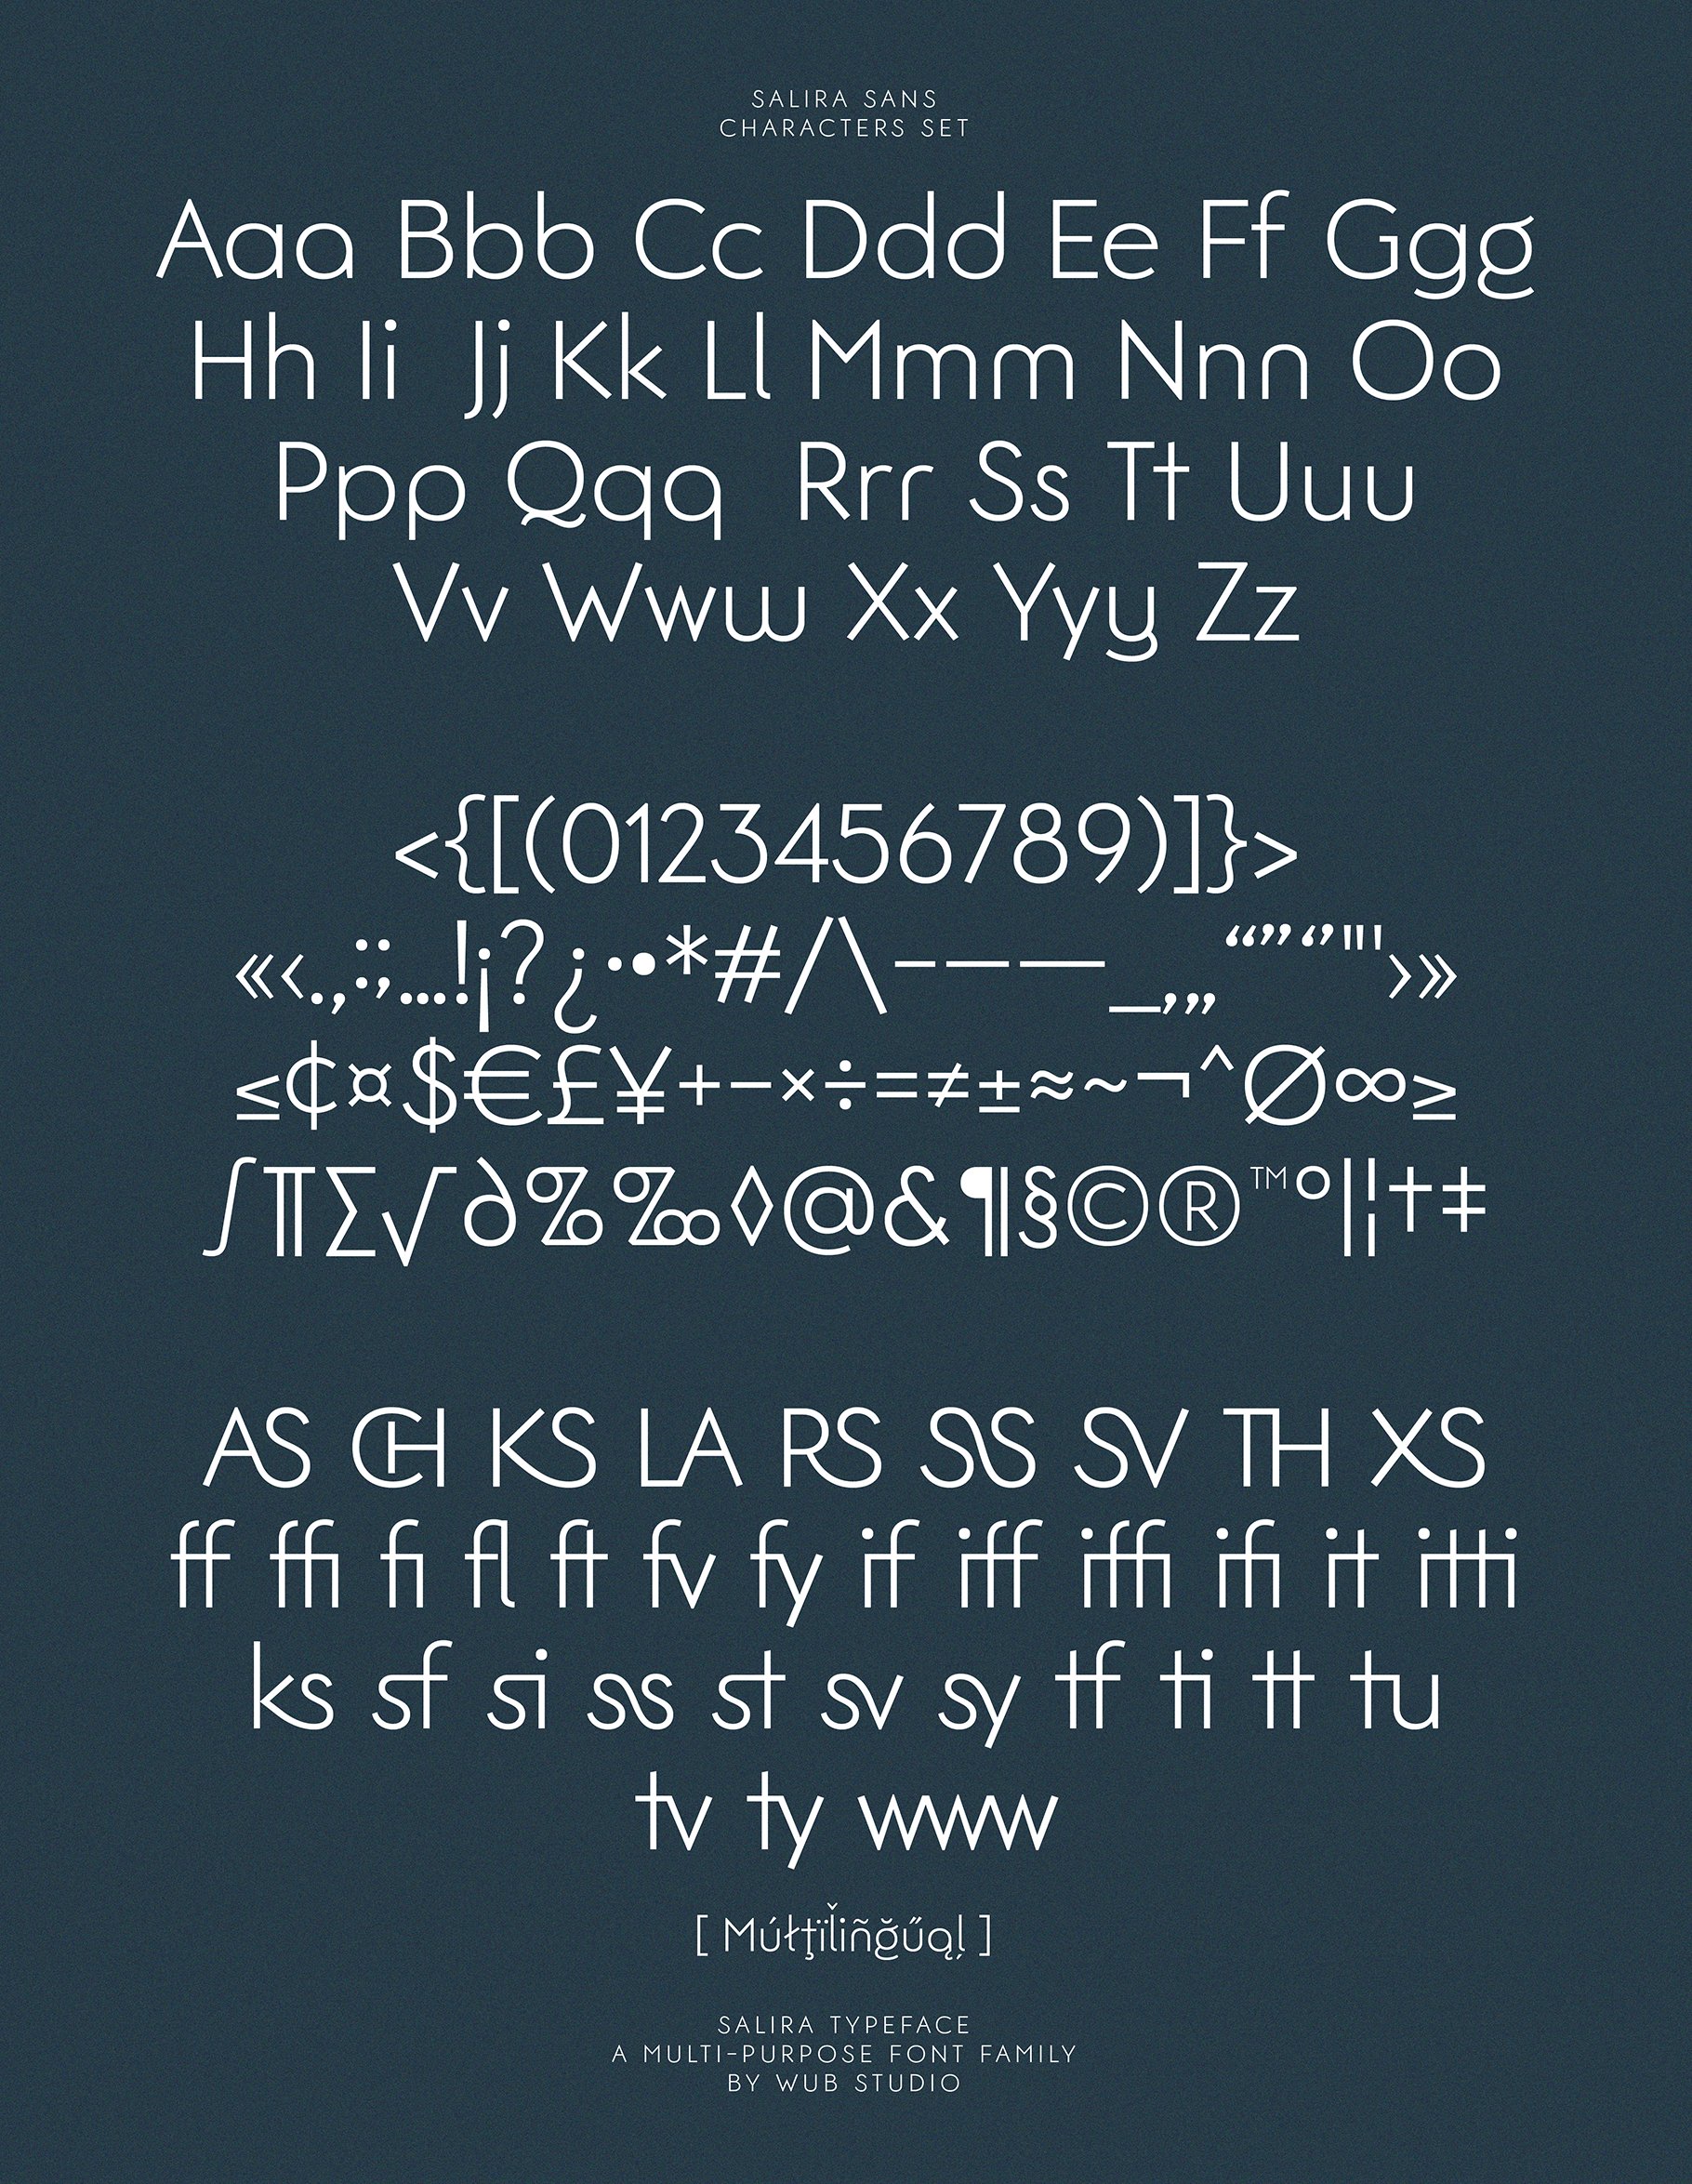 salira typeface 14 740